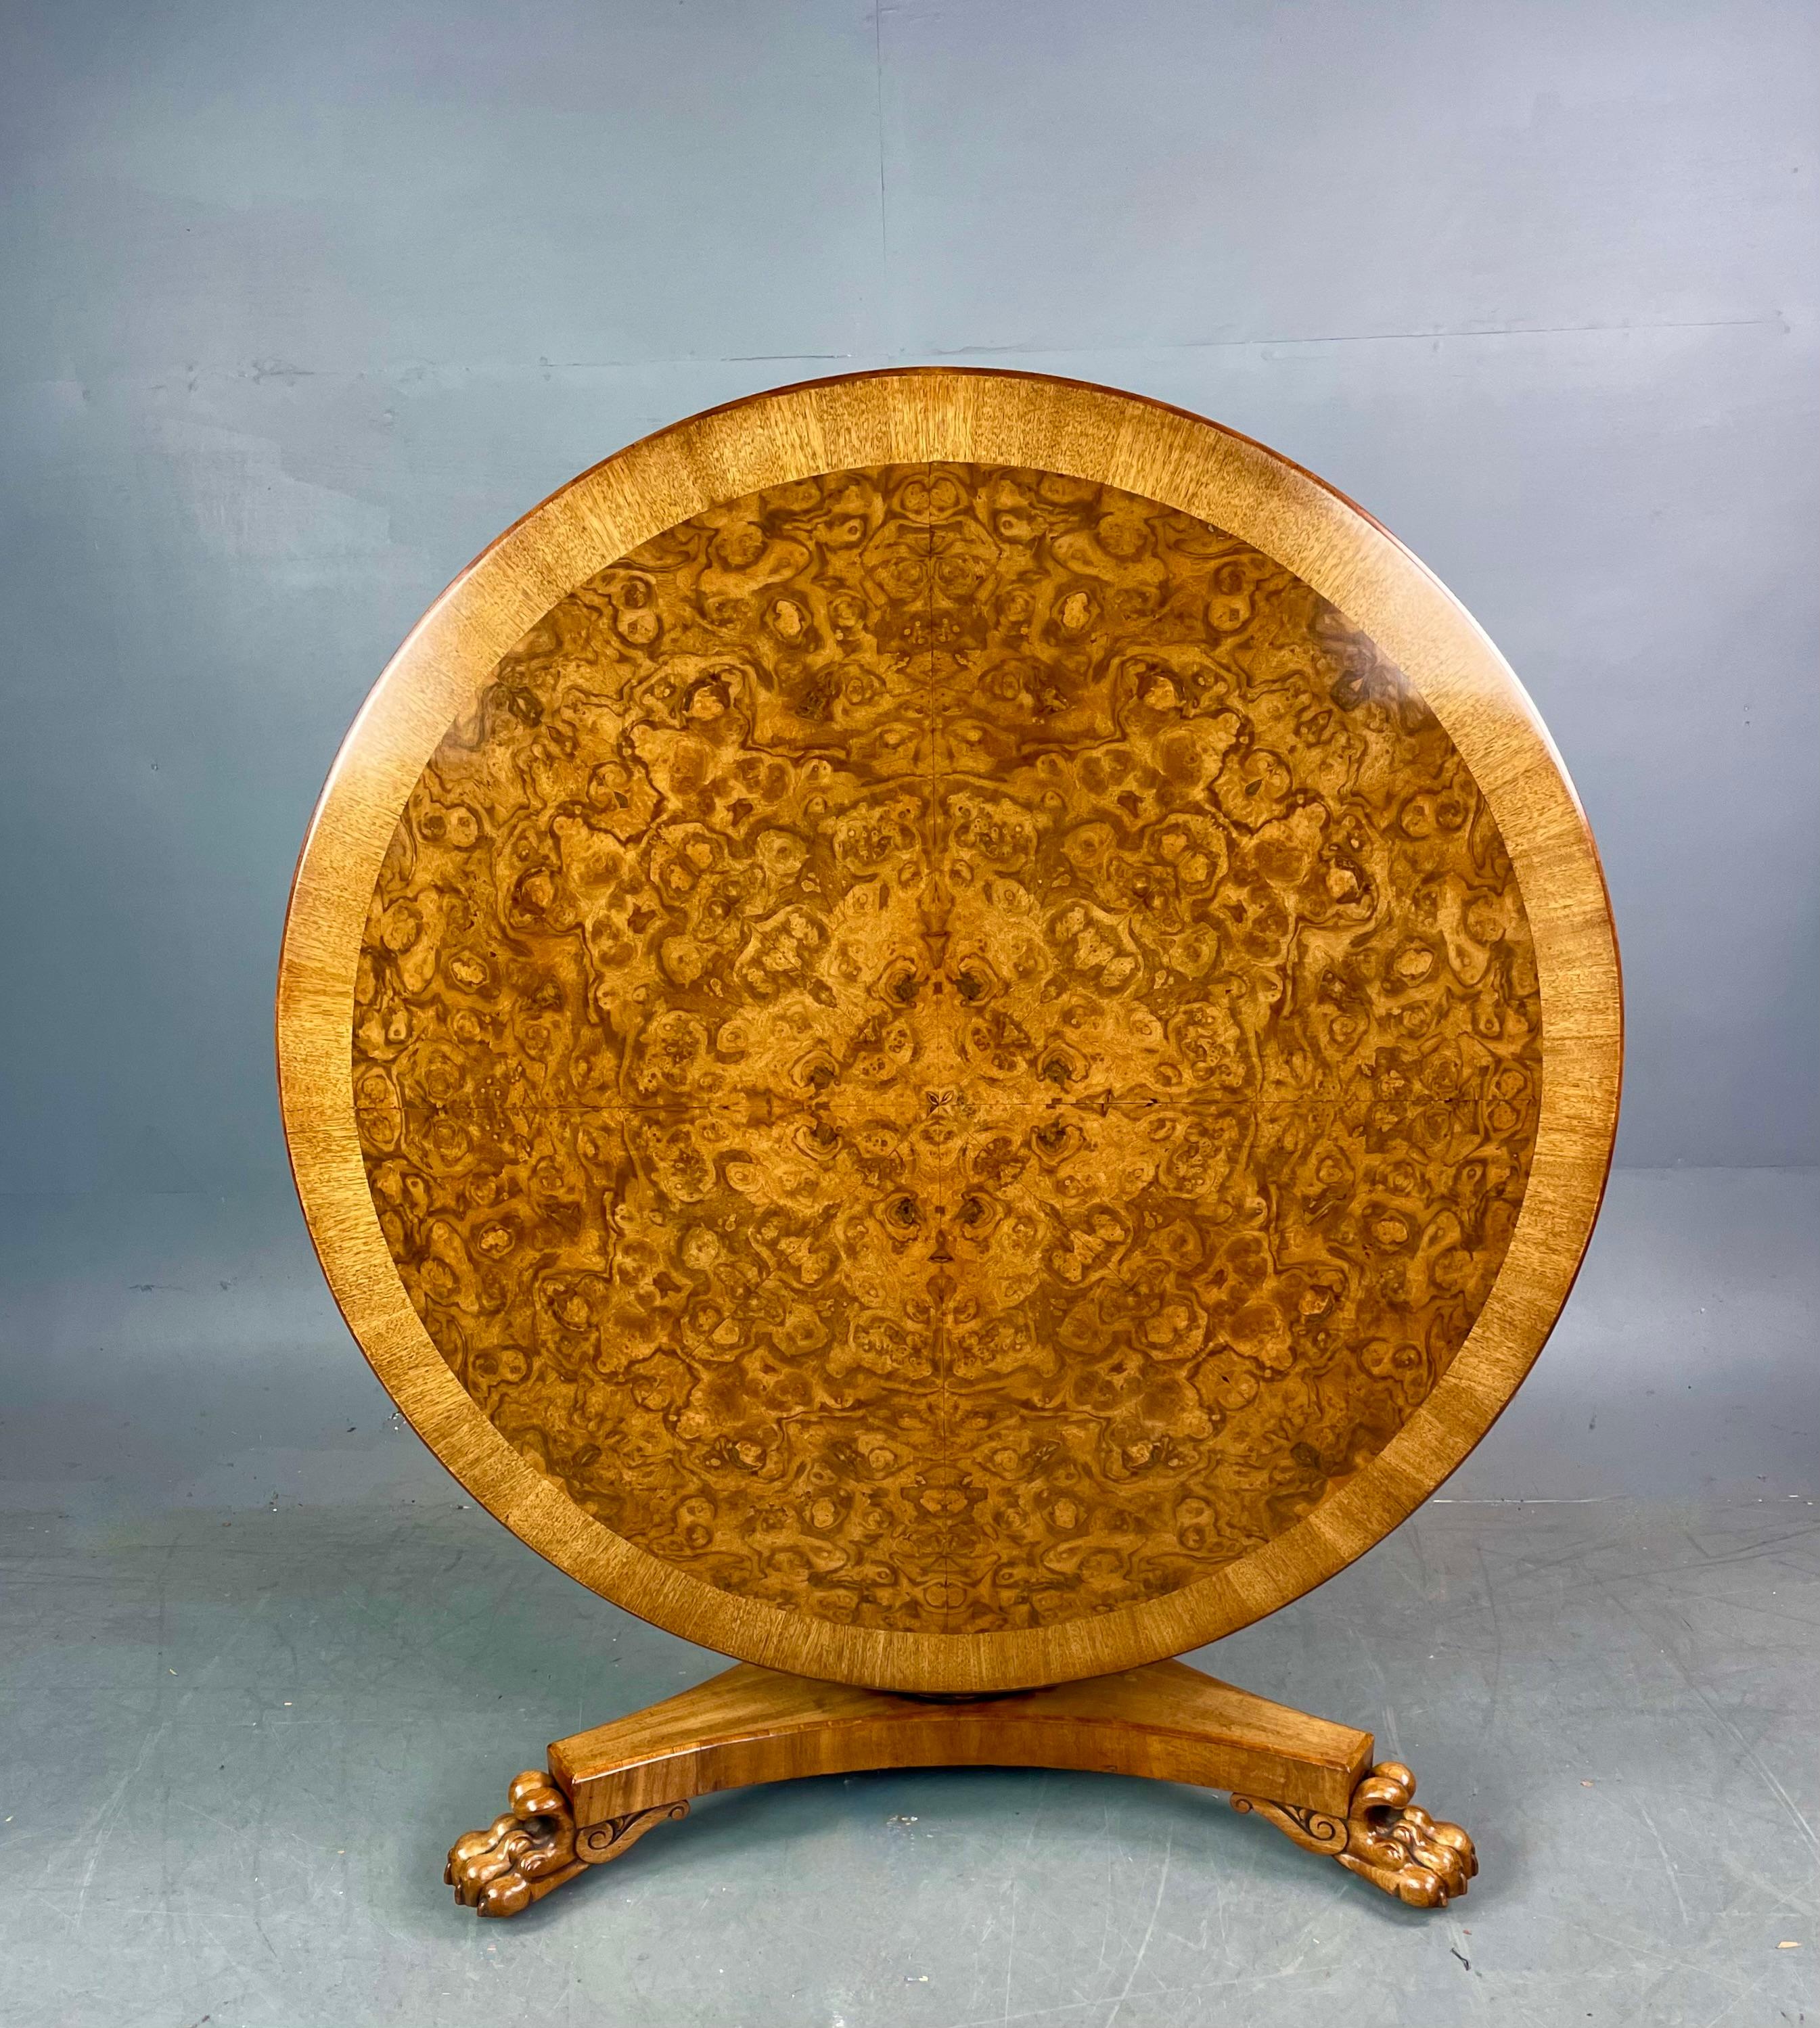 Table de salle à manger circulaire de style régence vers 1820 .
La table a un fantastique plateau en noyer figuré avec des bandes transversales en noyer, elle est d'une couleur fantastique et en excellent état non marqué, elle peut accueillir six